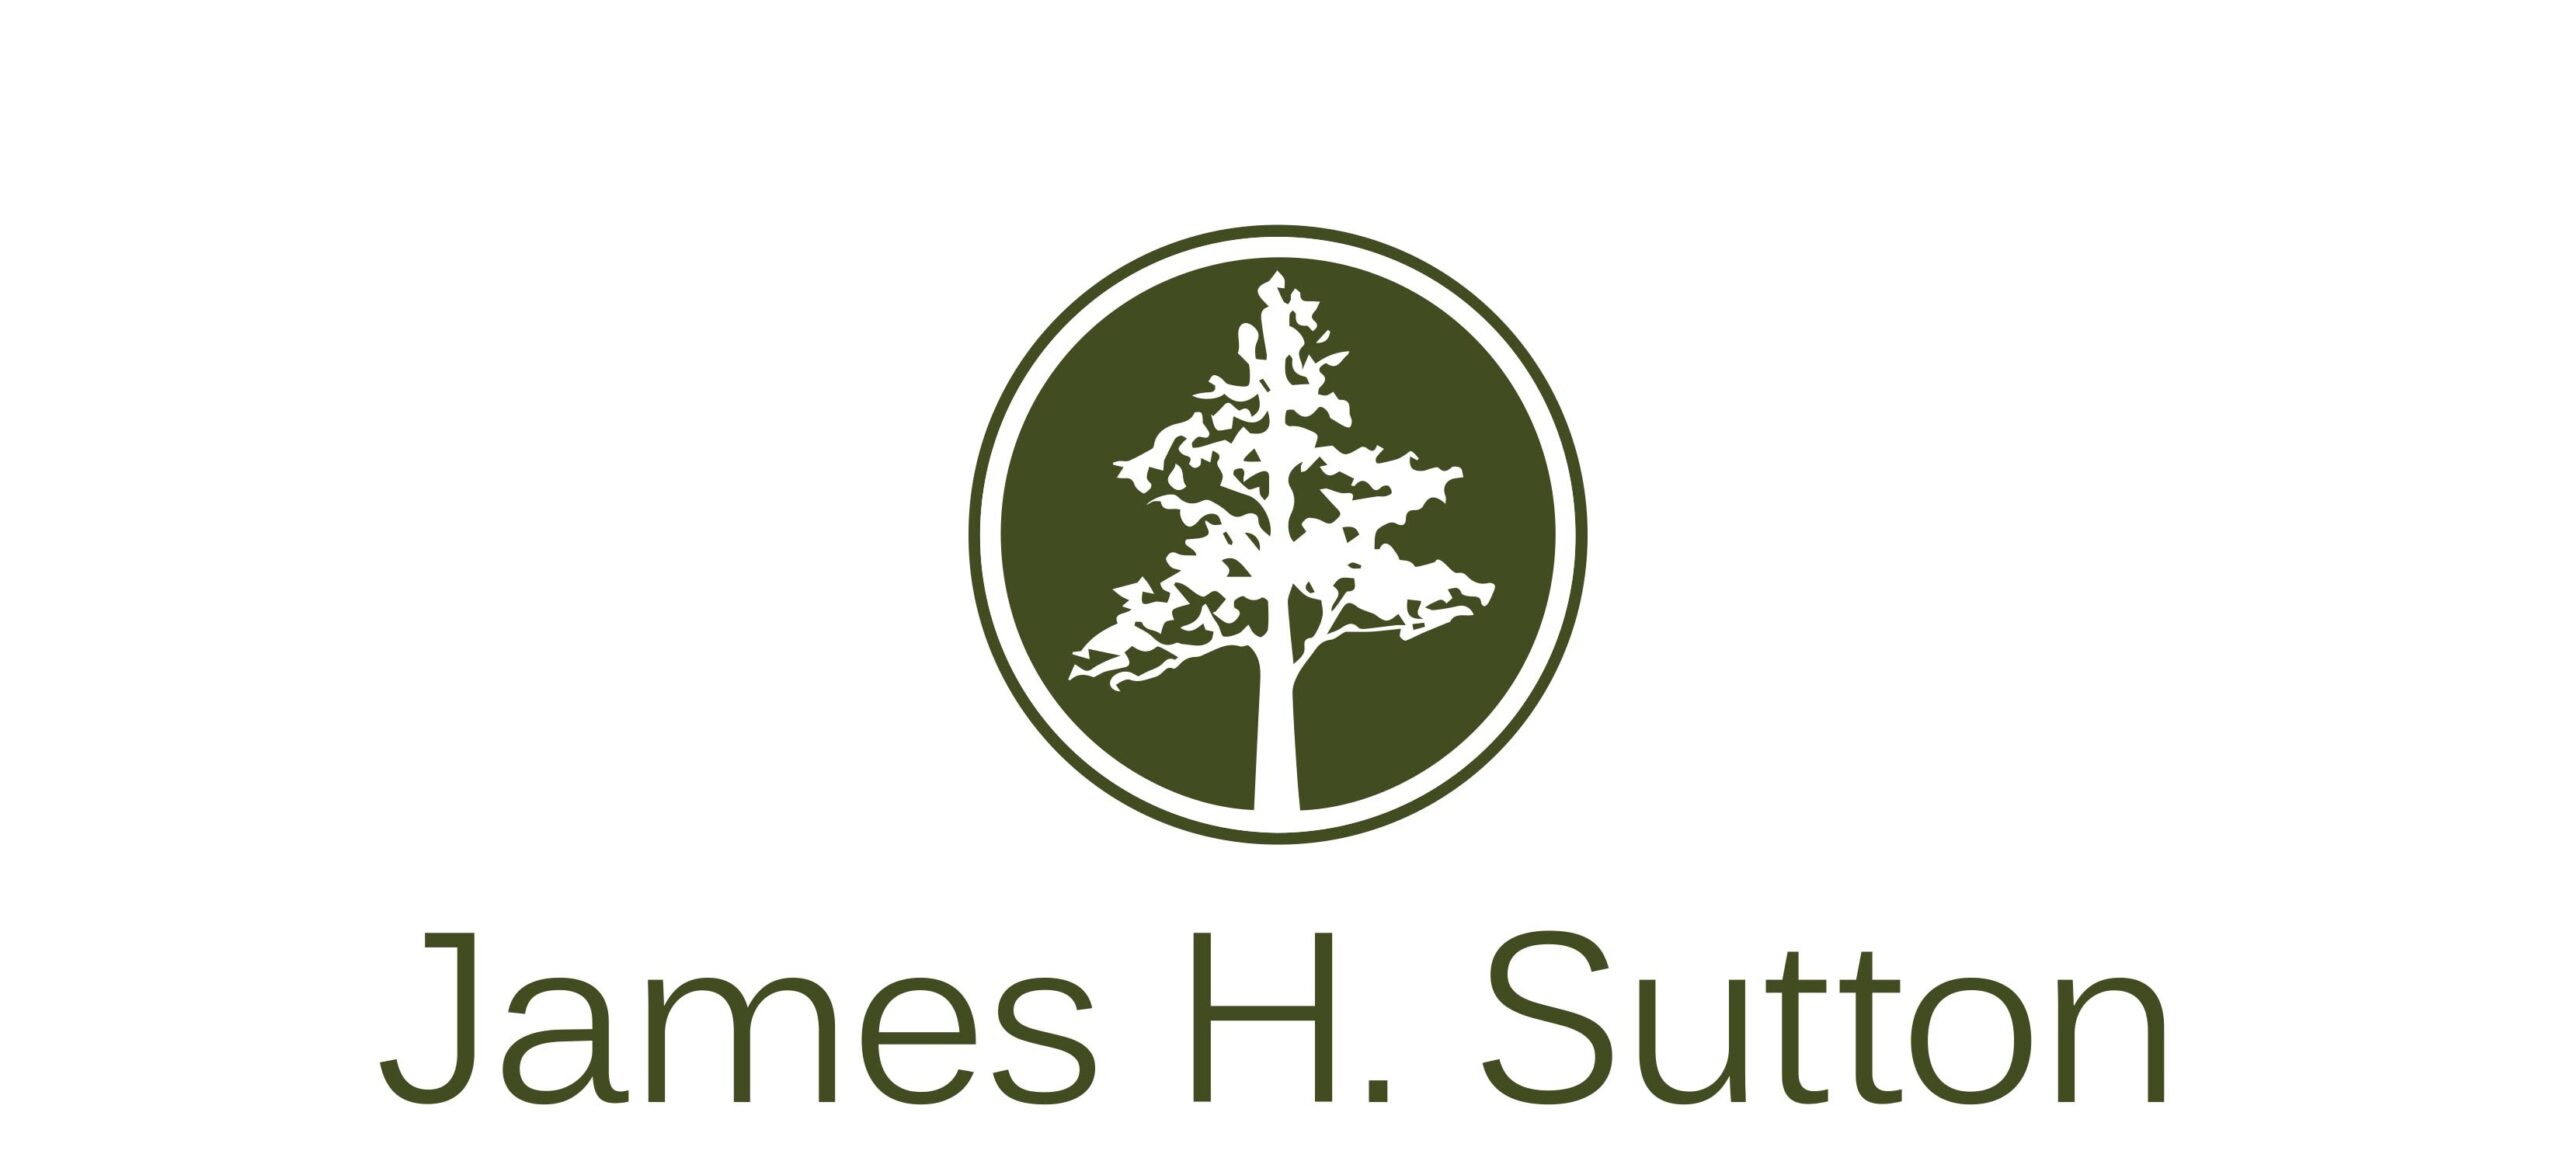 james h. sutton logo